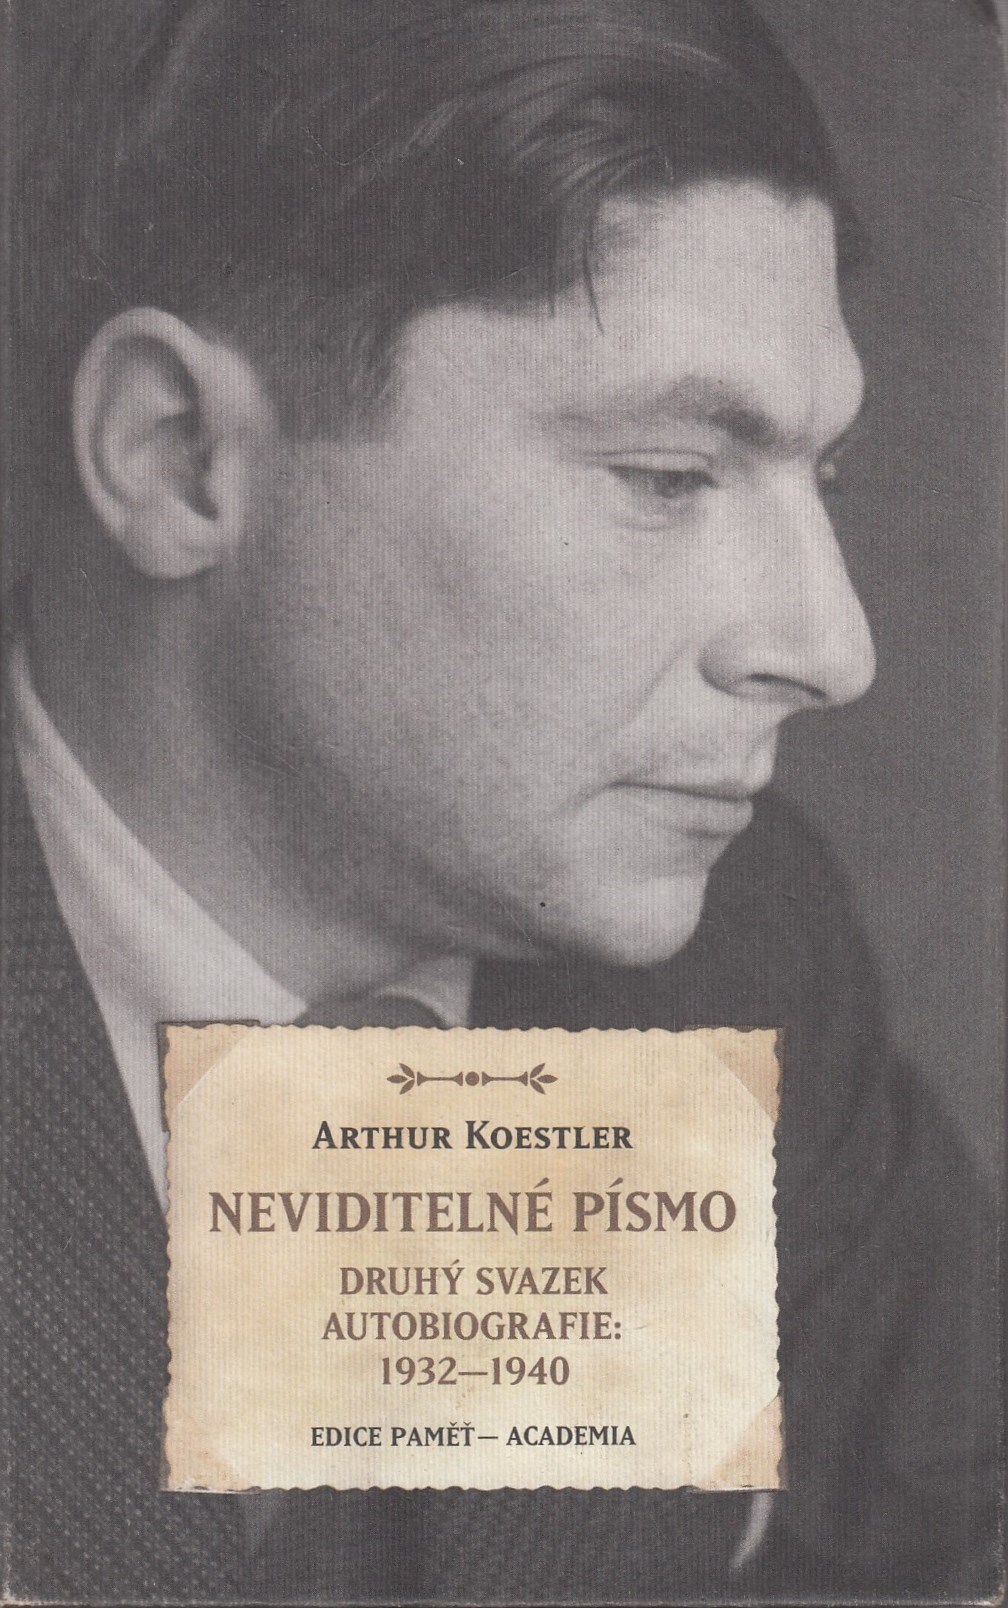 Arthur Koestler na titulní straně druhého dílu autobiografie vydané nakladatelstvím Academia v roce 2018. Zdroj: cechoslovacivgulagu.cz